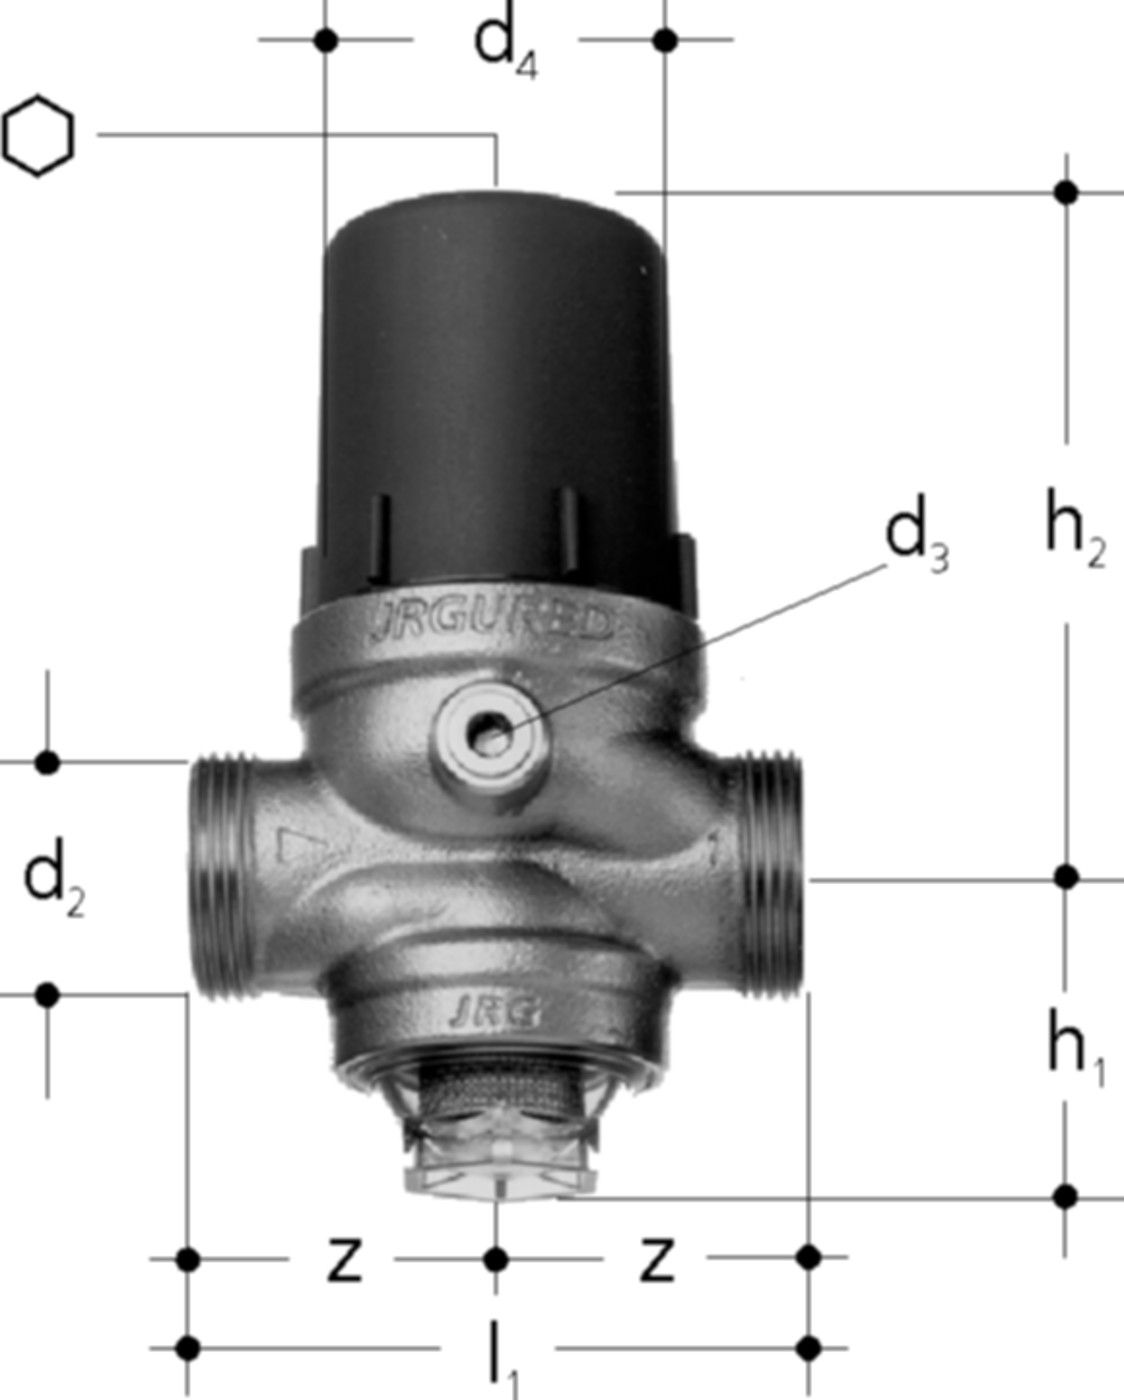 Druckred-Ventil DN40 1303.040 11/2" / G 13/4" , ohne Verschraubung - JRG Armaturen